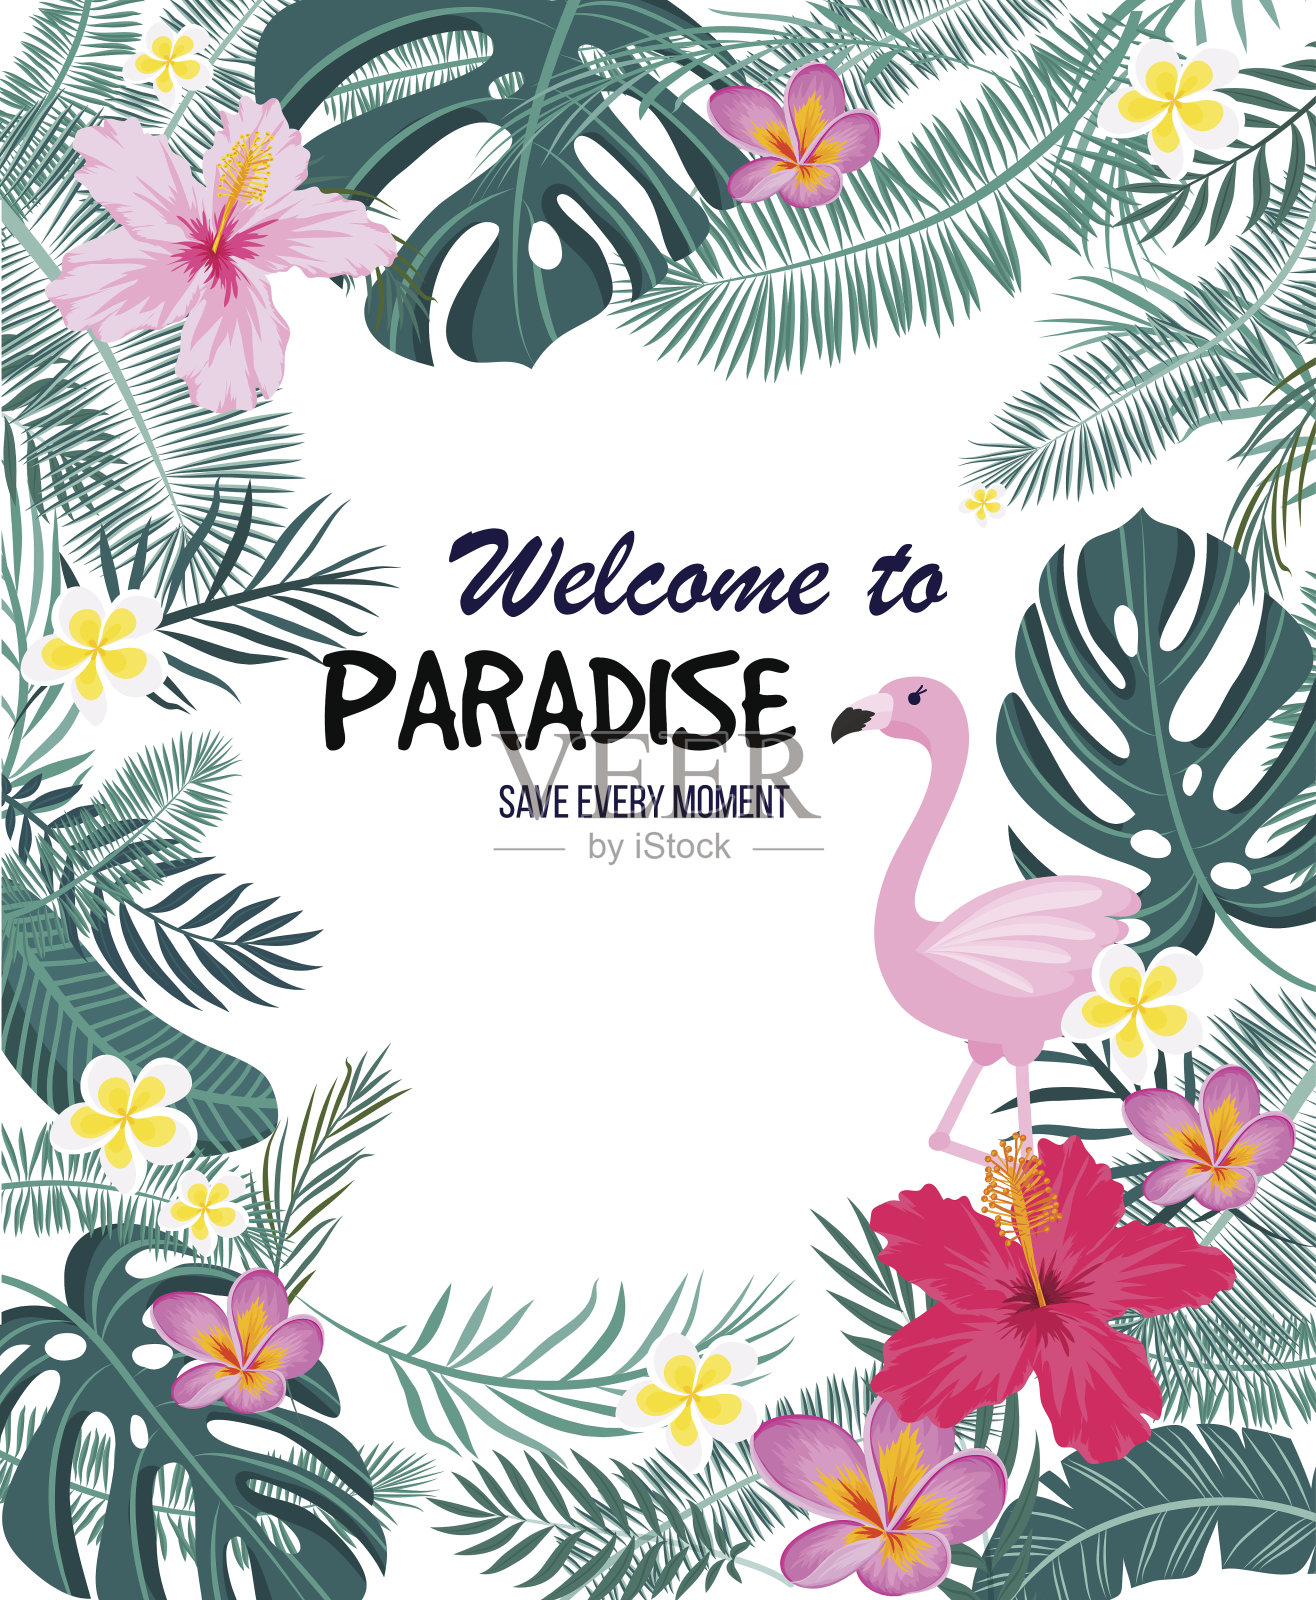 一张印有棕榈叶、火烈鸟和奇异花朵的热带卡片。向量插画图片素材